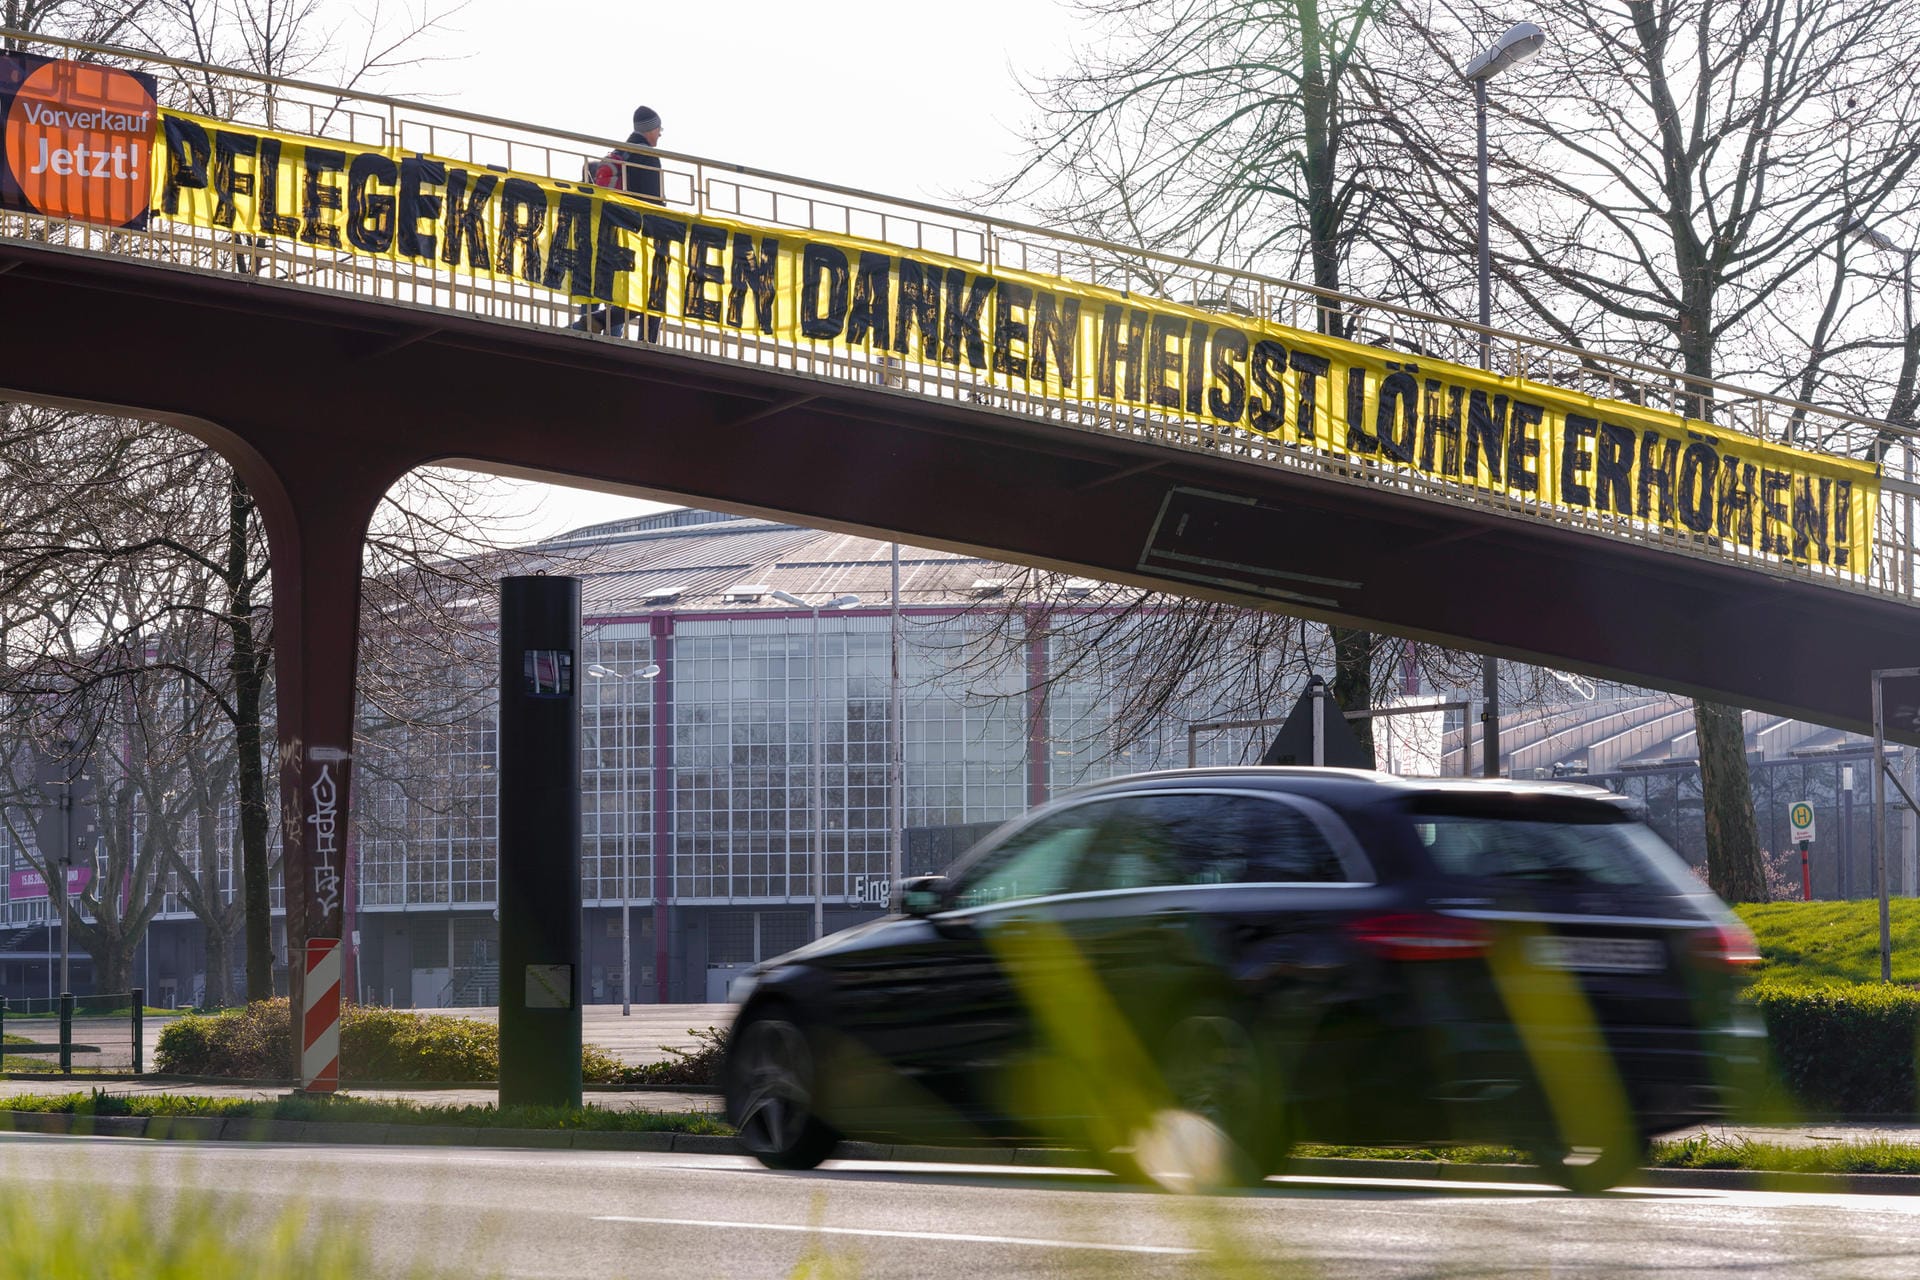 In Dortmund sind die Fans noch einen Schritt weitergegangen. An einer Brücke hängt ein Plakat, in dem höhere Löhne für die Pflegekräfte gefordert werden.